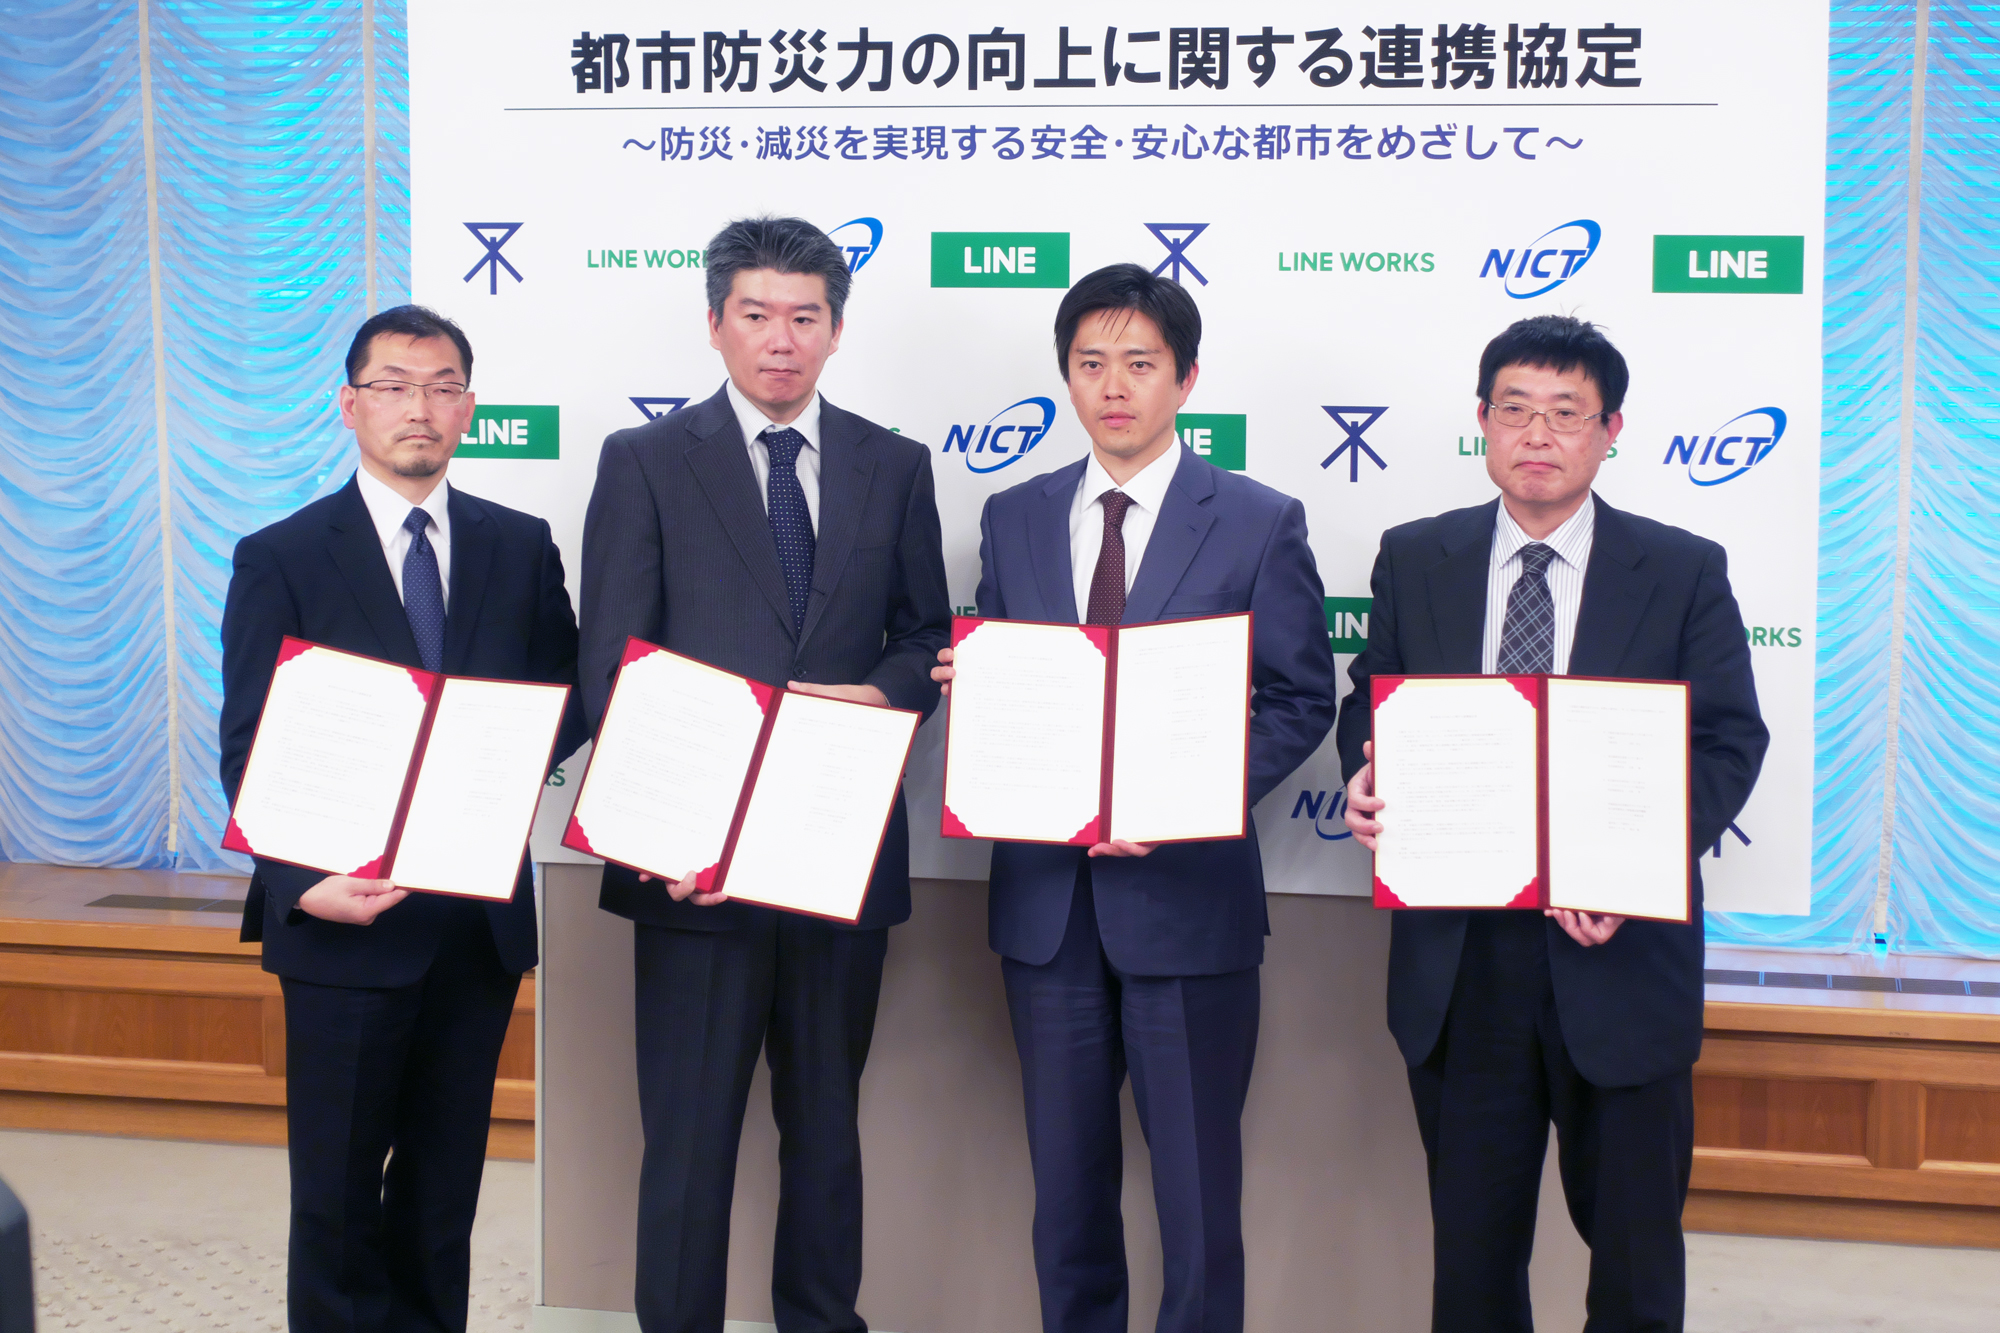 大阪市、LINE株式会社及びワークスモバイルジャパン株式会社と「都市防災力の向上に関する連携協定」を締結しました